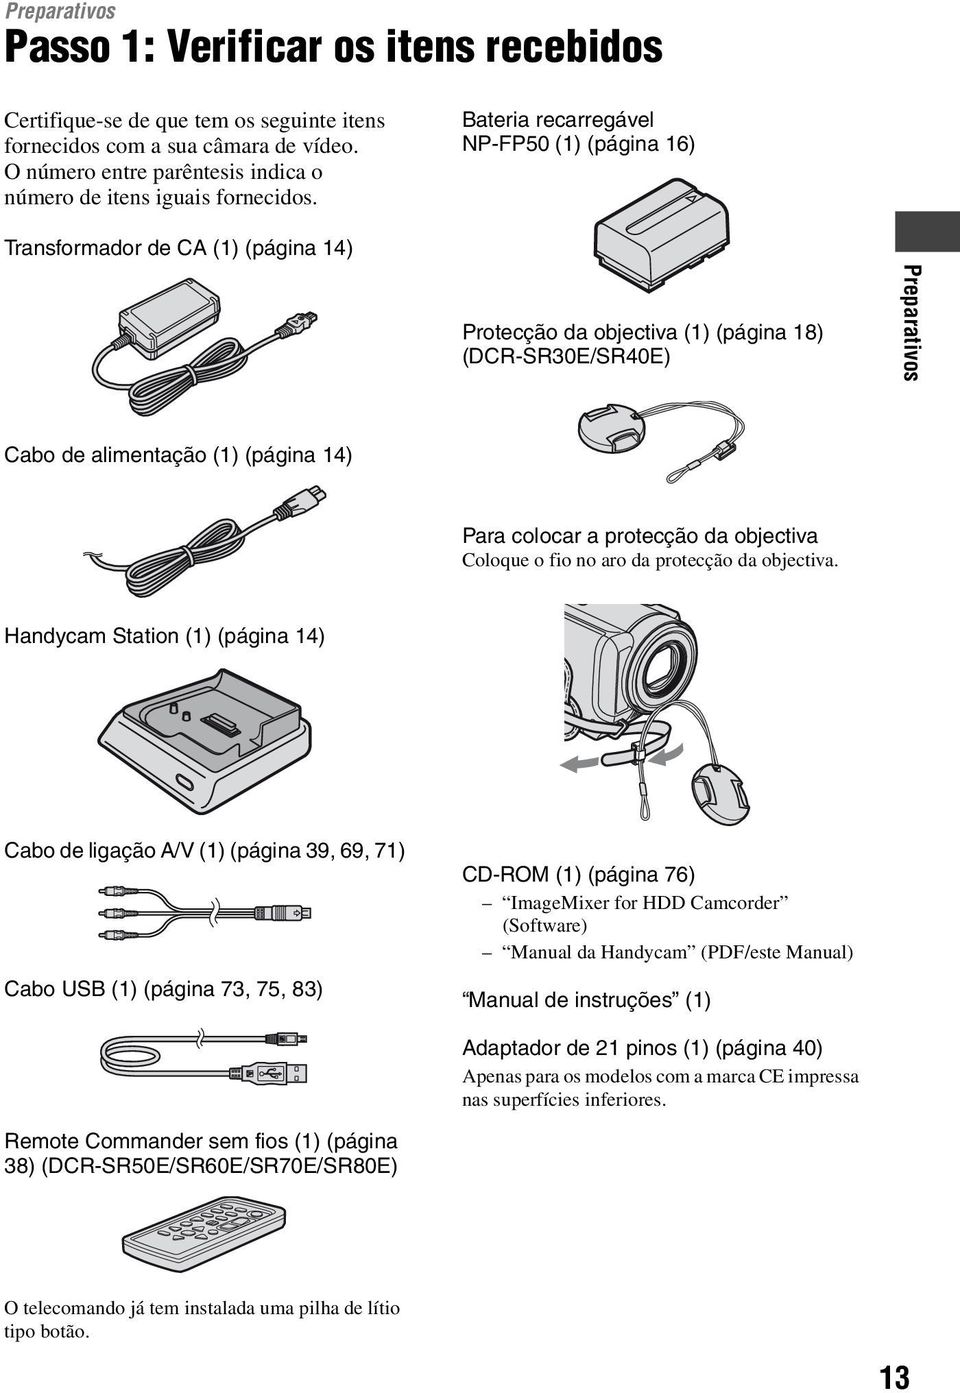 Bateria recarregável NP-FP50 (1) (página 16) Transformador de CA (1) (página 14) Protecção da objectiva (1) (página 18) (DCR-SR30E/SR40E) Preparativos Cabo de alimentação (1) (página 14) Para colocar